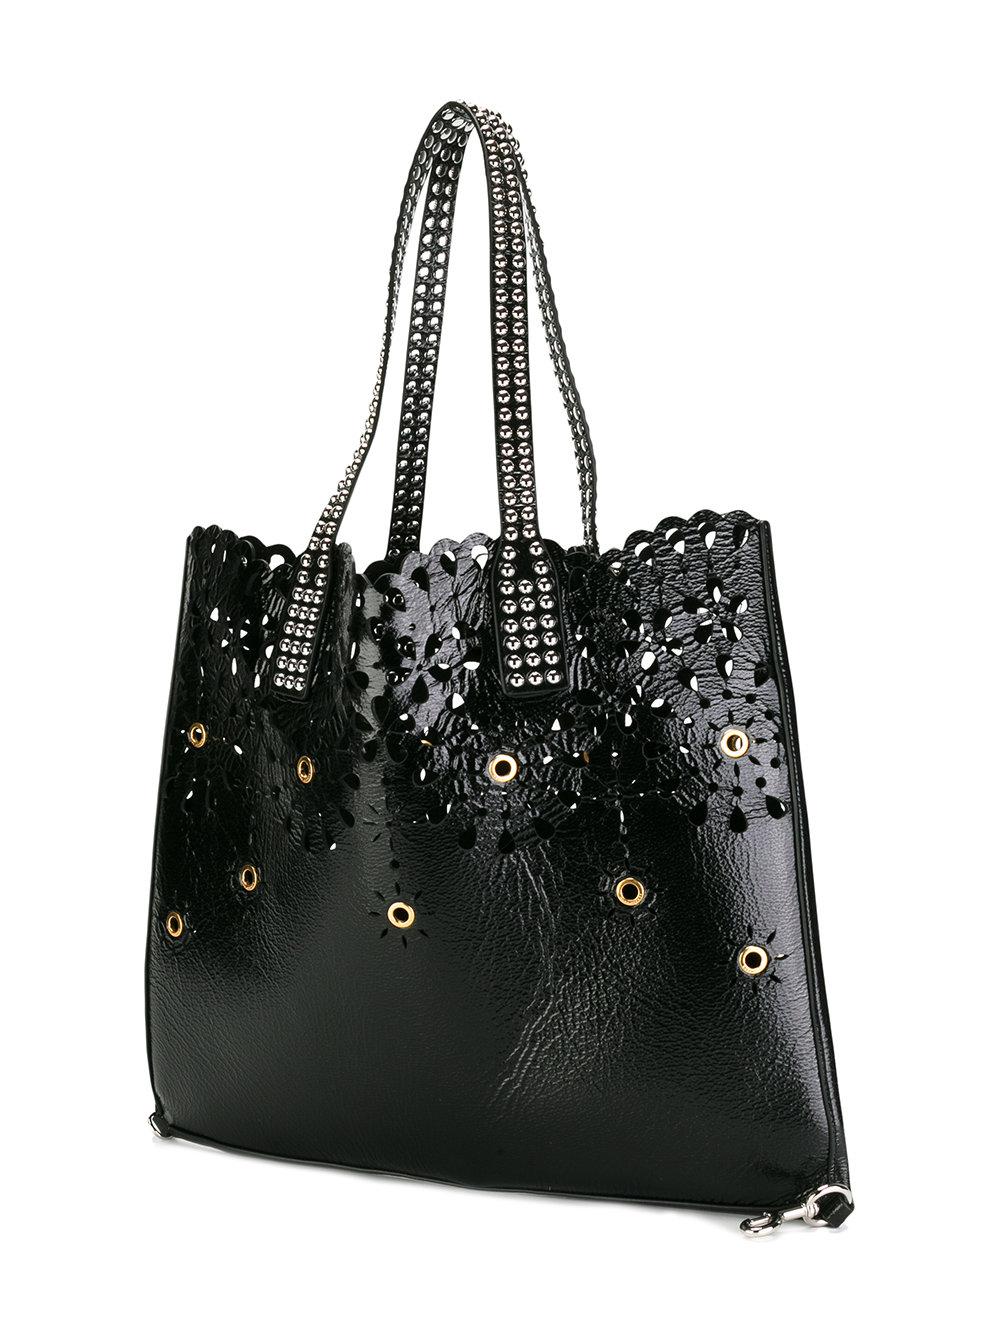 Marc Jacobs Leather Embellished Wingman Shoulder Bag in Black - Lyst